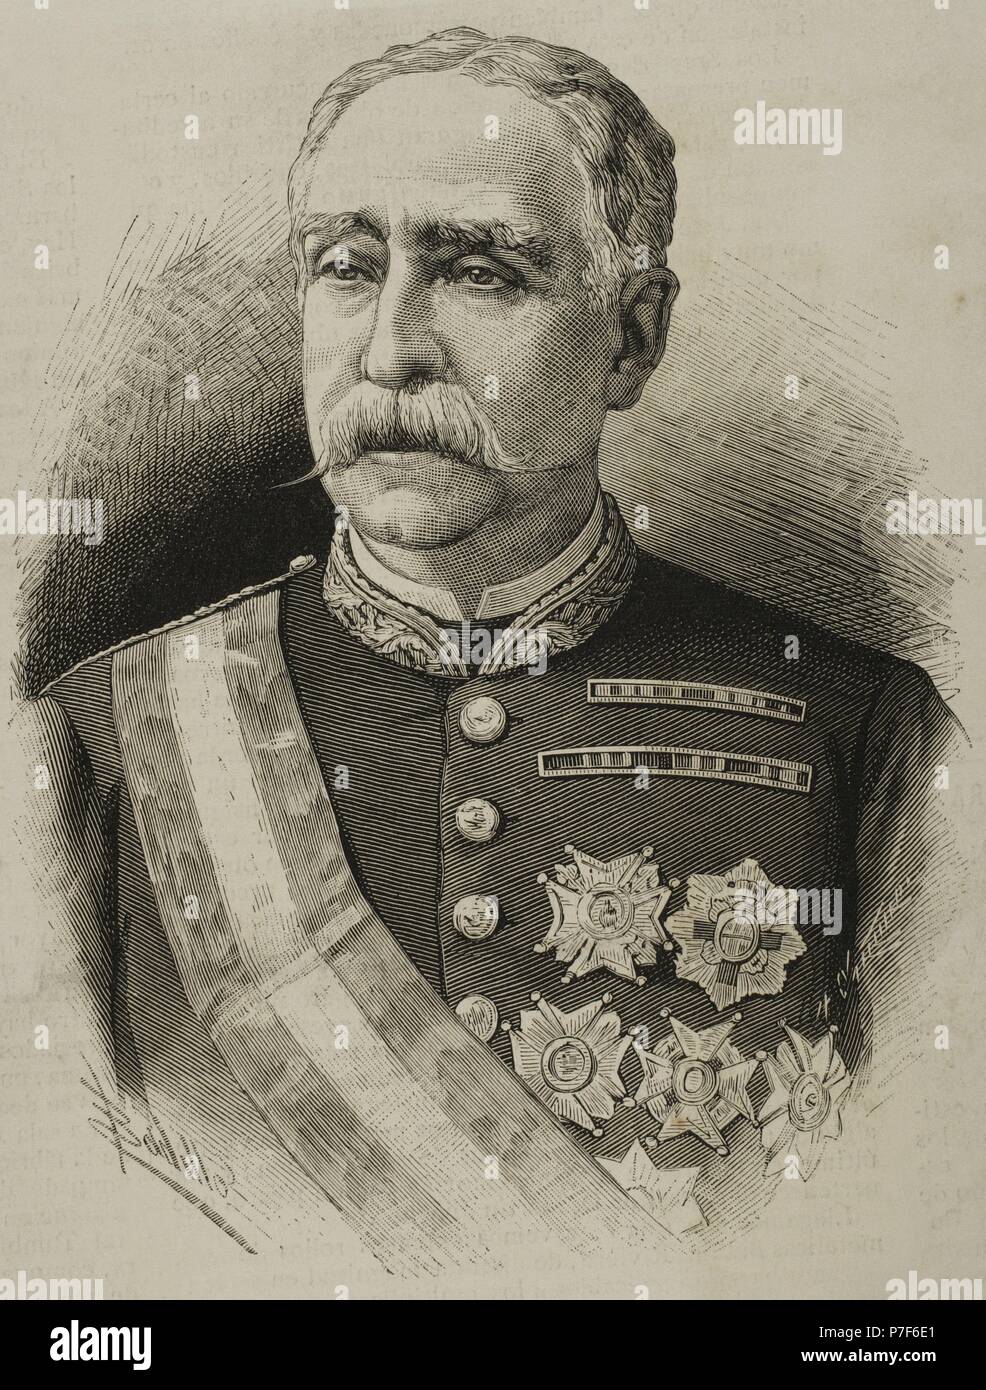 Miguel de la Vega Inclan (1820-1884). Spanish military, governor of Puerto Rico. Portrait. Engraving by Arturo Carretero (1852-1903). 'La Ilustracio n Espan ola y Americana', 1884. Stock Photo